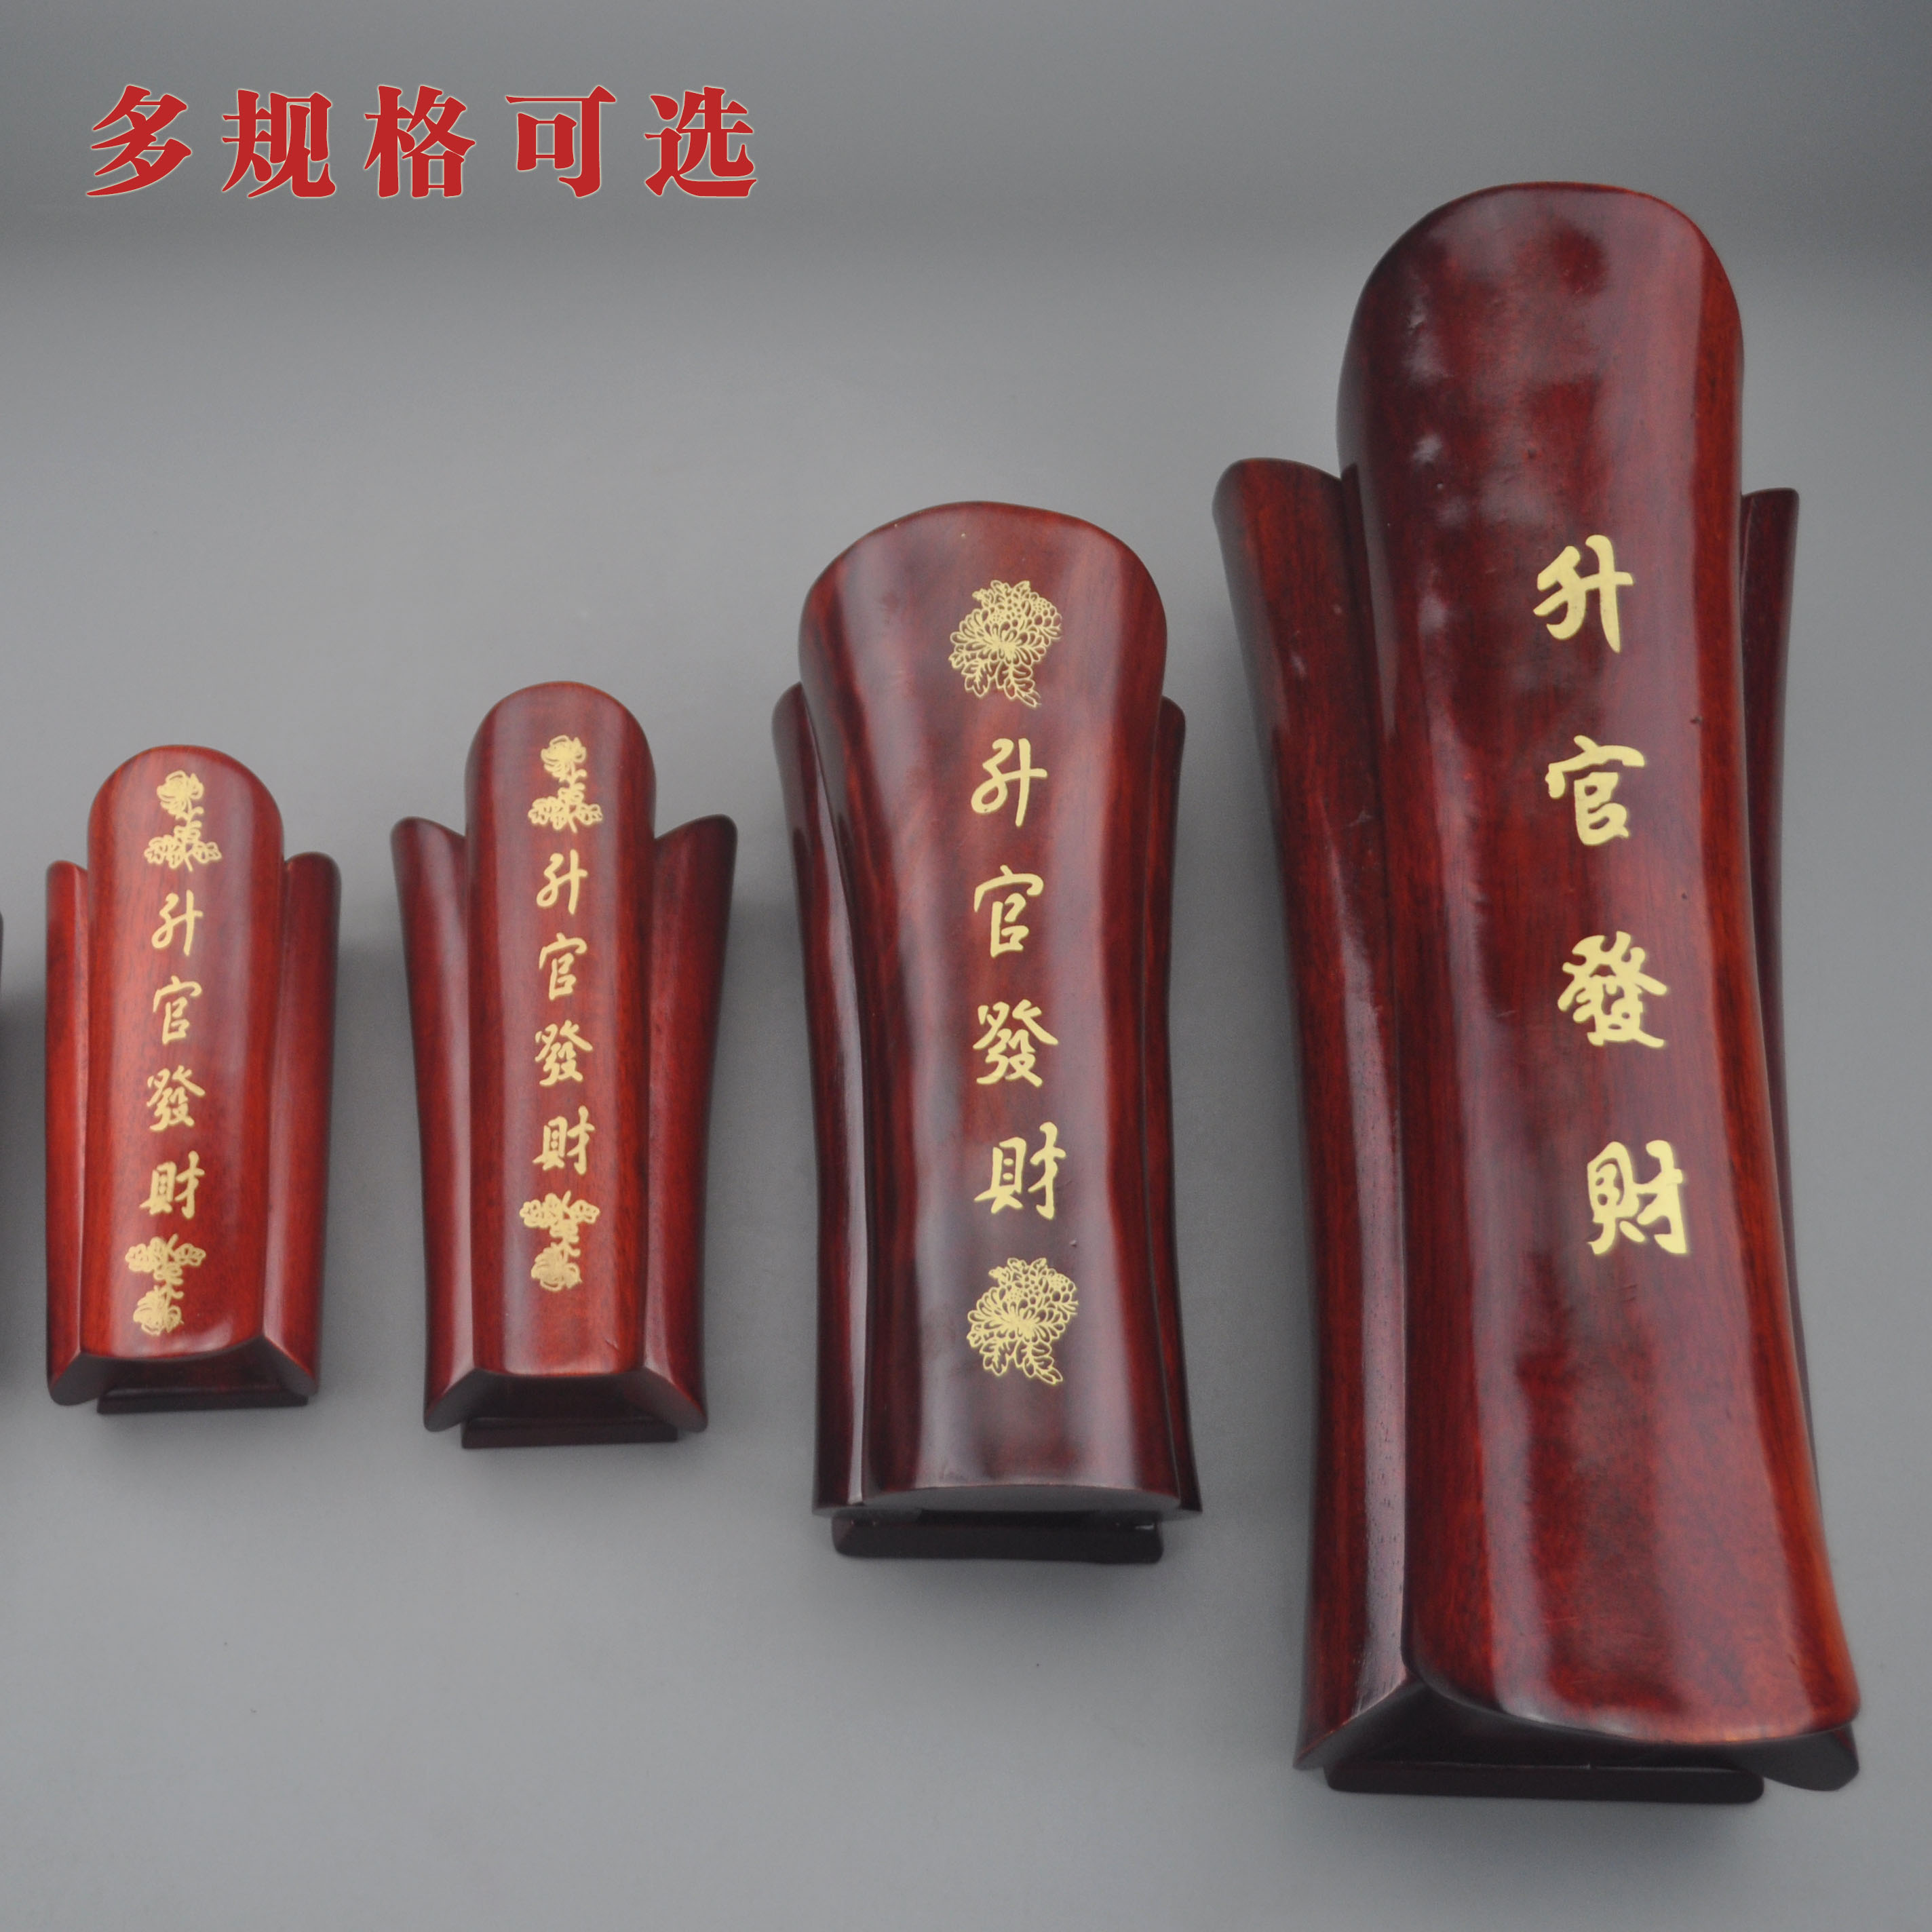 越南红木棺材摆件工艺品 桌面实木雕摆件 中式特色楠木棺材小把件